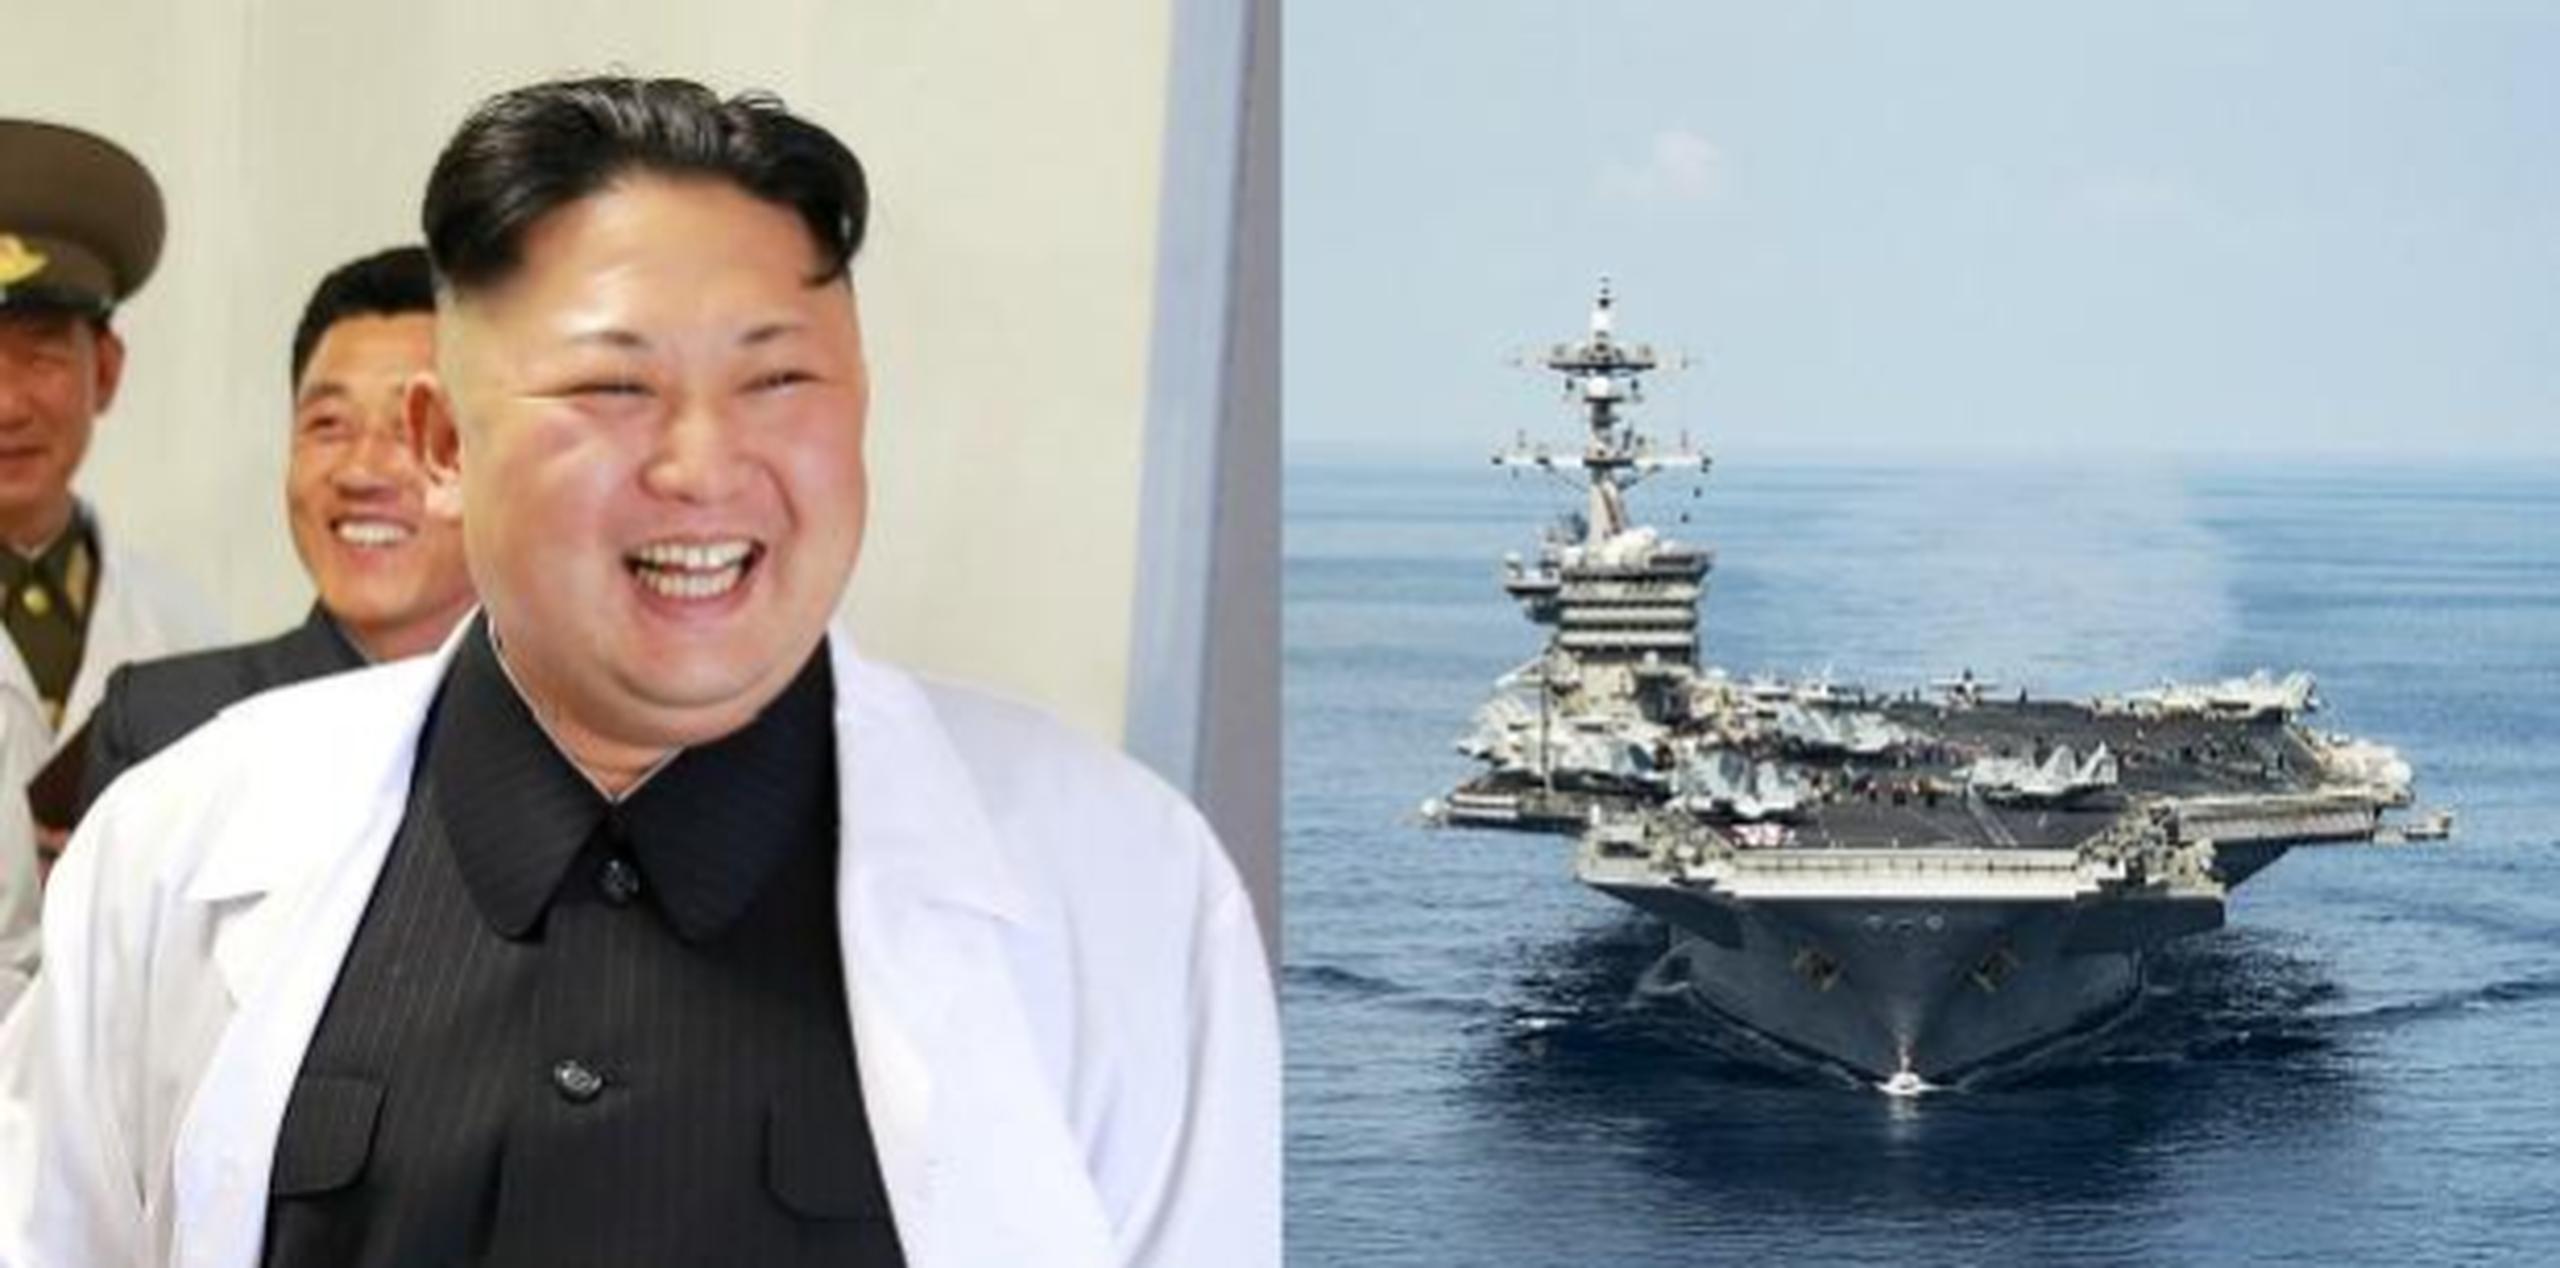 Corea del Norte aseguró que un ataque contra el USS Carl Vinson de Estados Unidos sería "un ejemplo real para mostrar la fuerza de nuestro ejército". (GDA)